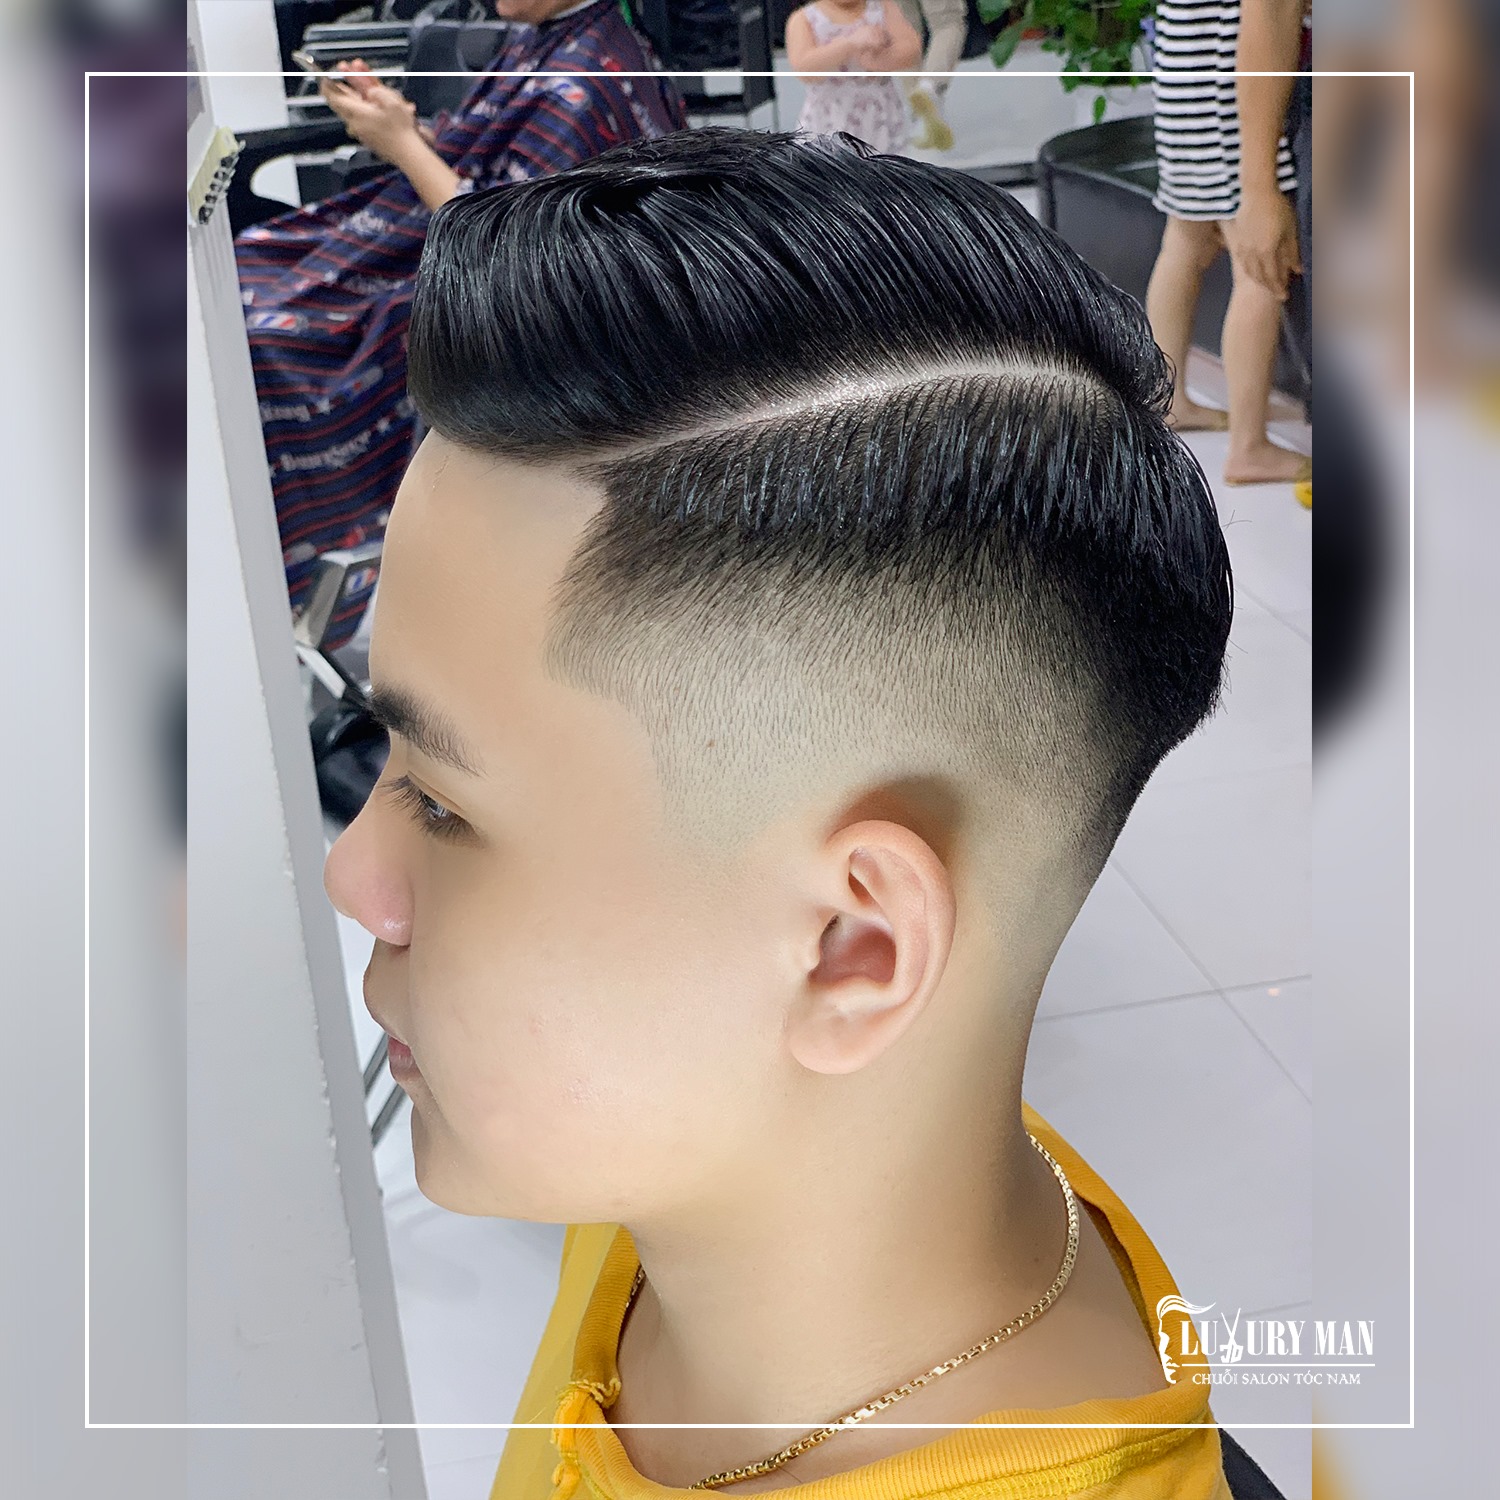 Cảm nhận sự khác biệt trên mái tóc của mình với dịch vụ cắt tóc nam hiện đại và chuyên nghiệp tại Việt Trì. Đội ngũ thợ tay nghề cao sẽ giúp bạn có kiểu tóc ưng ý nhất, đồng thời mang lại sự tự tin và cuốn hút cho bạn.